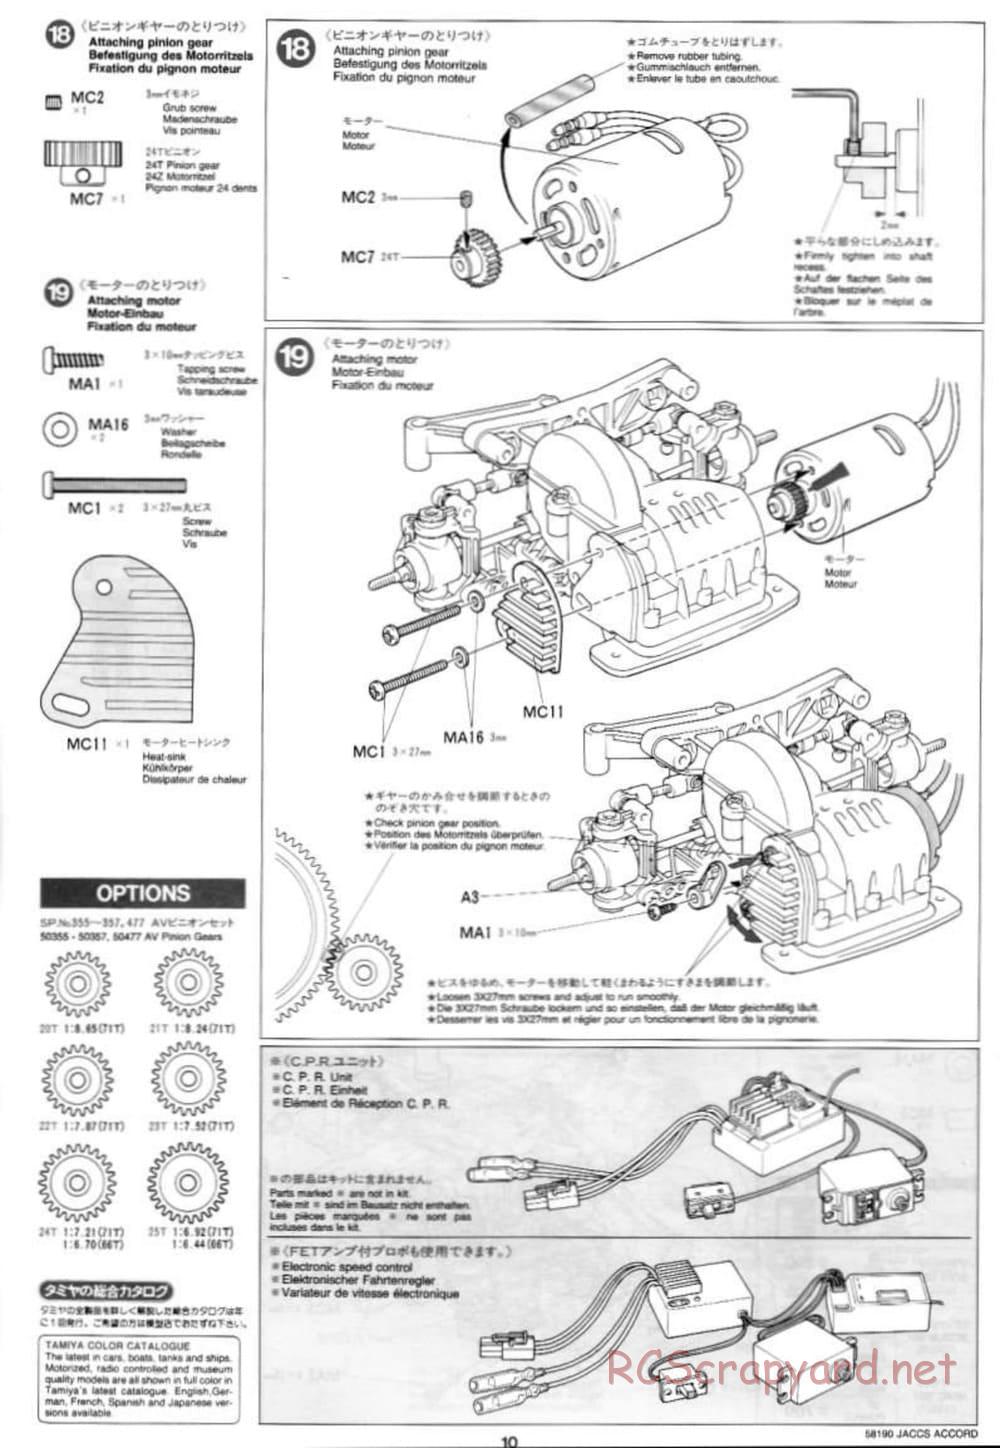 Tamiya - JACCS Honda Accord - FF-01 Chassis - Manual - Page 10